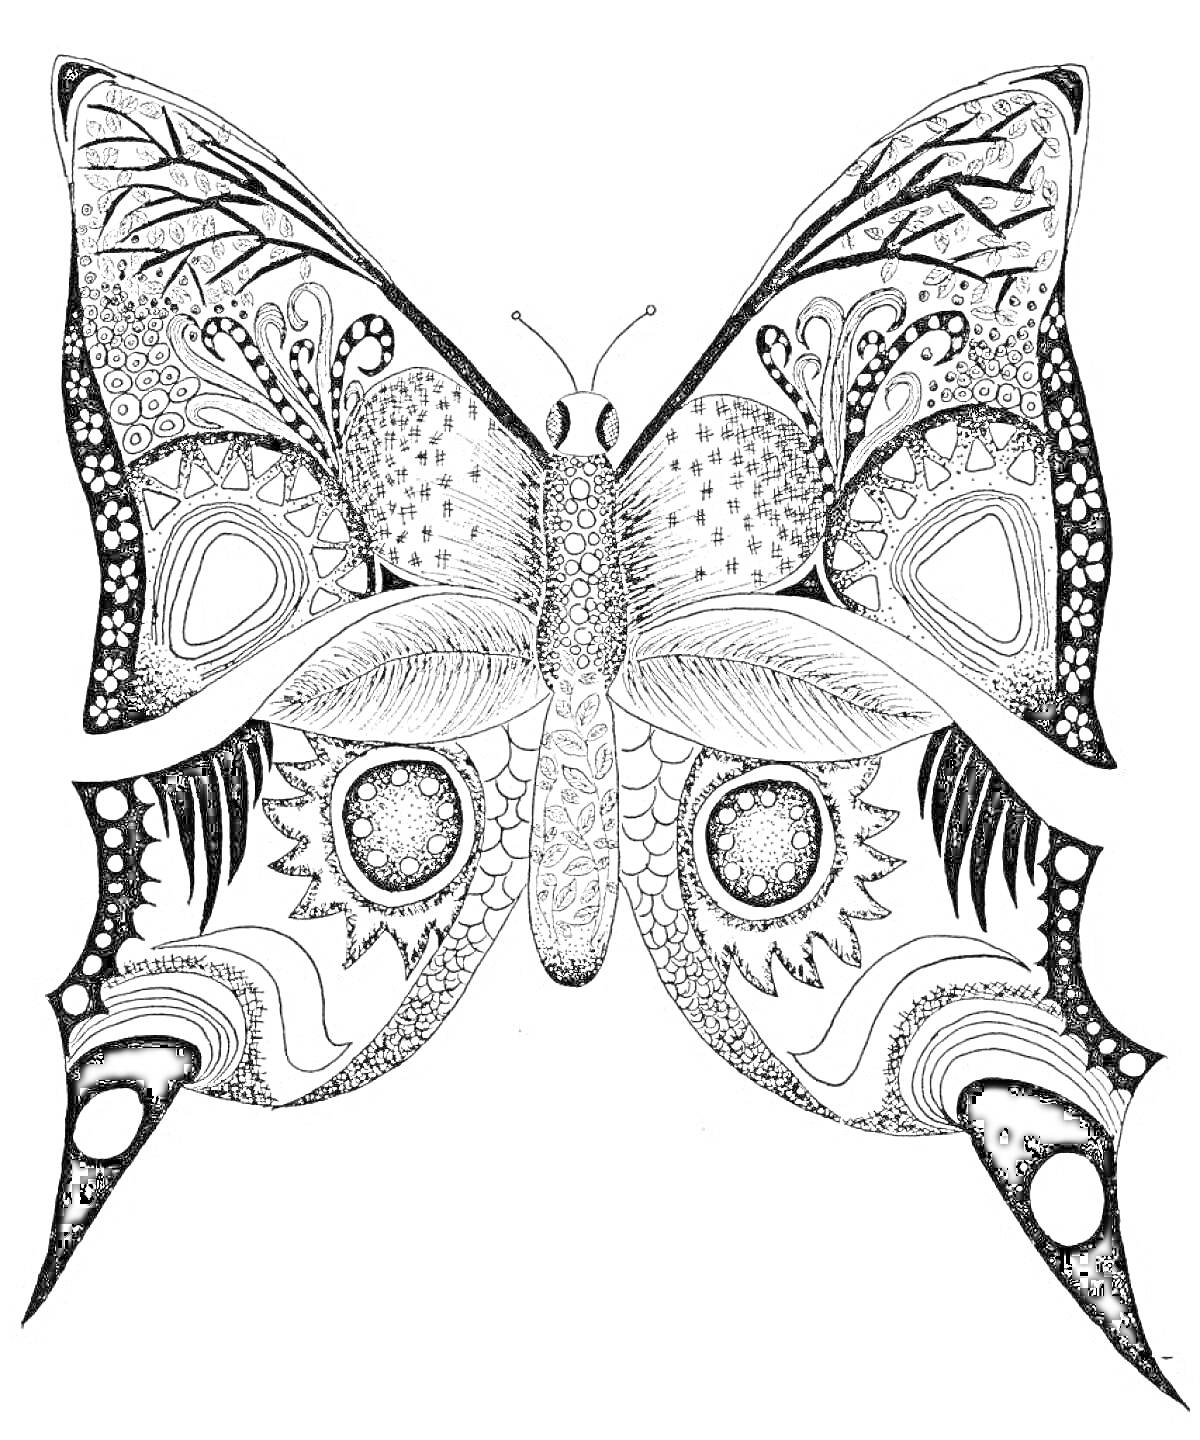 Раскраска Антистресс раскраска бабочка с узорами на крыльях, точками, линиями, кругами и цветочными элементами.